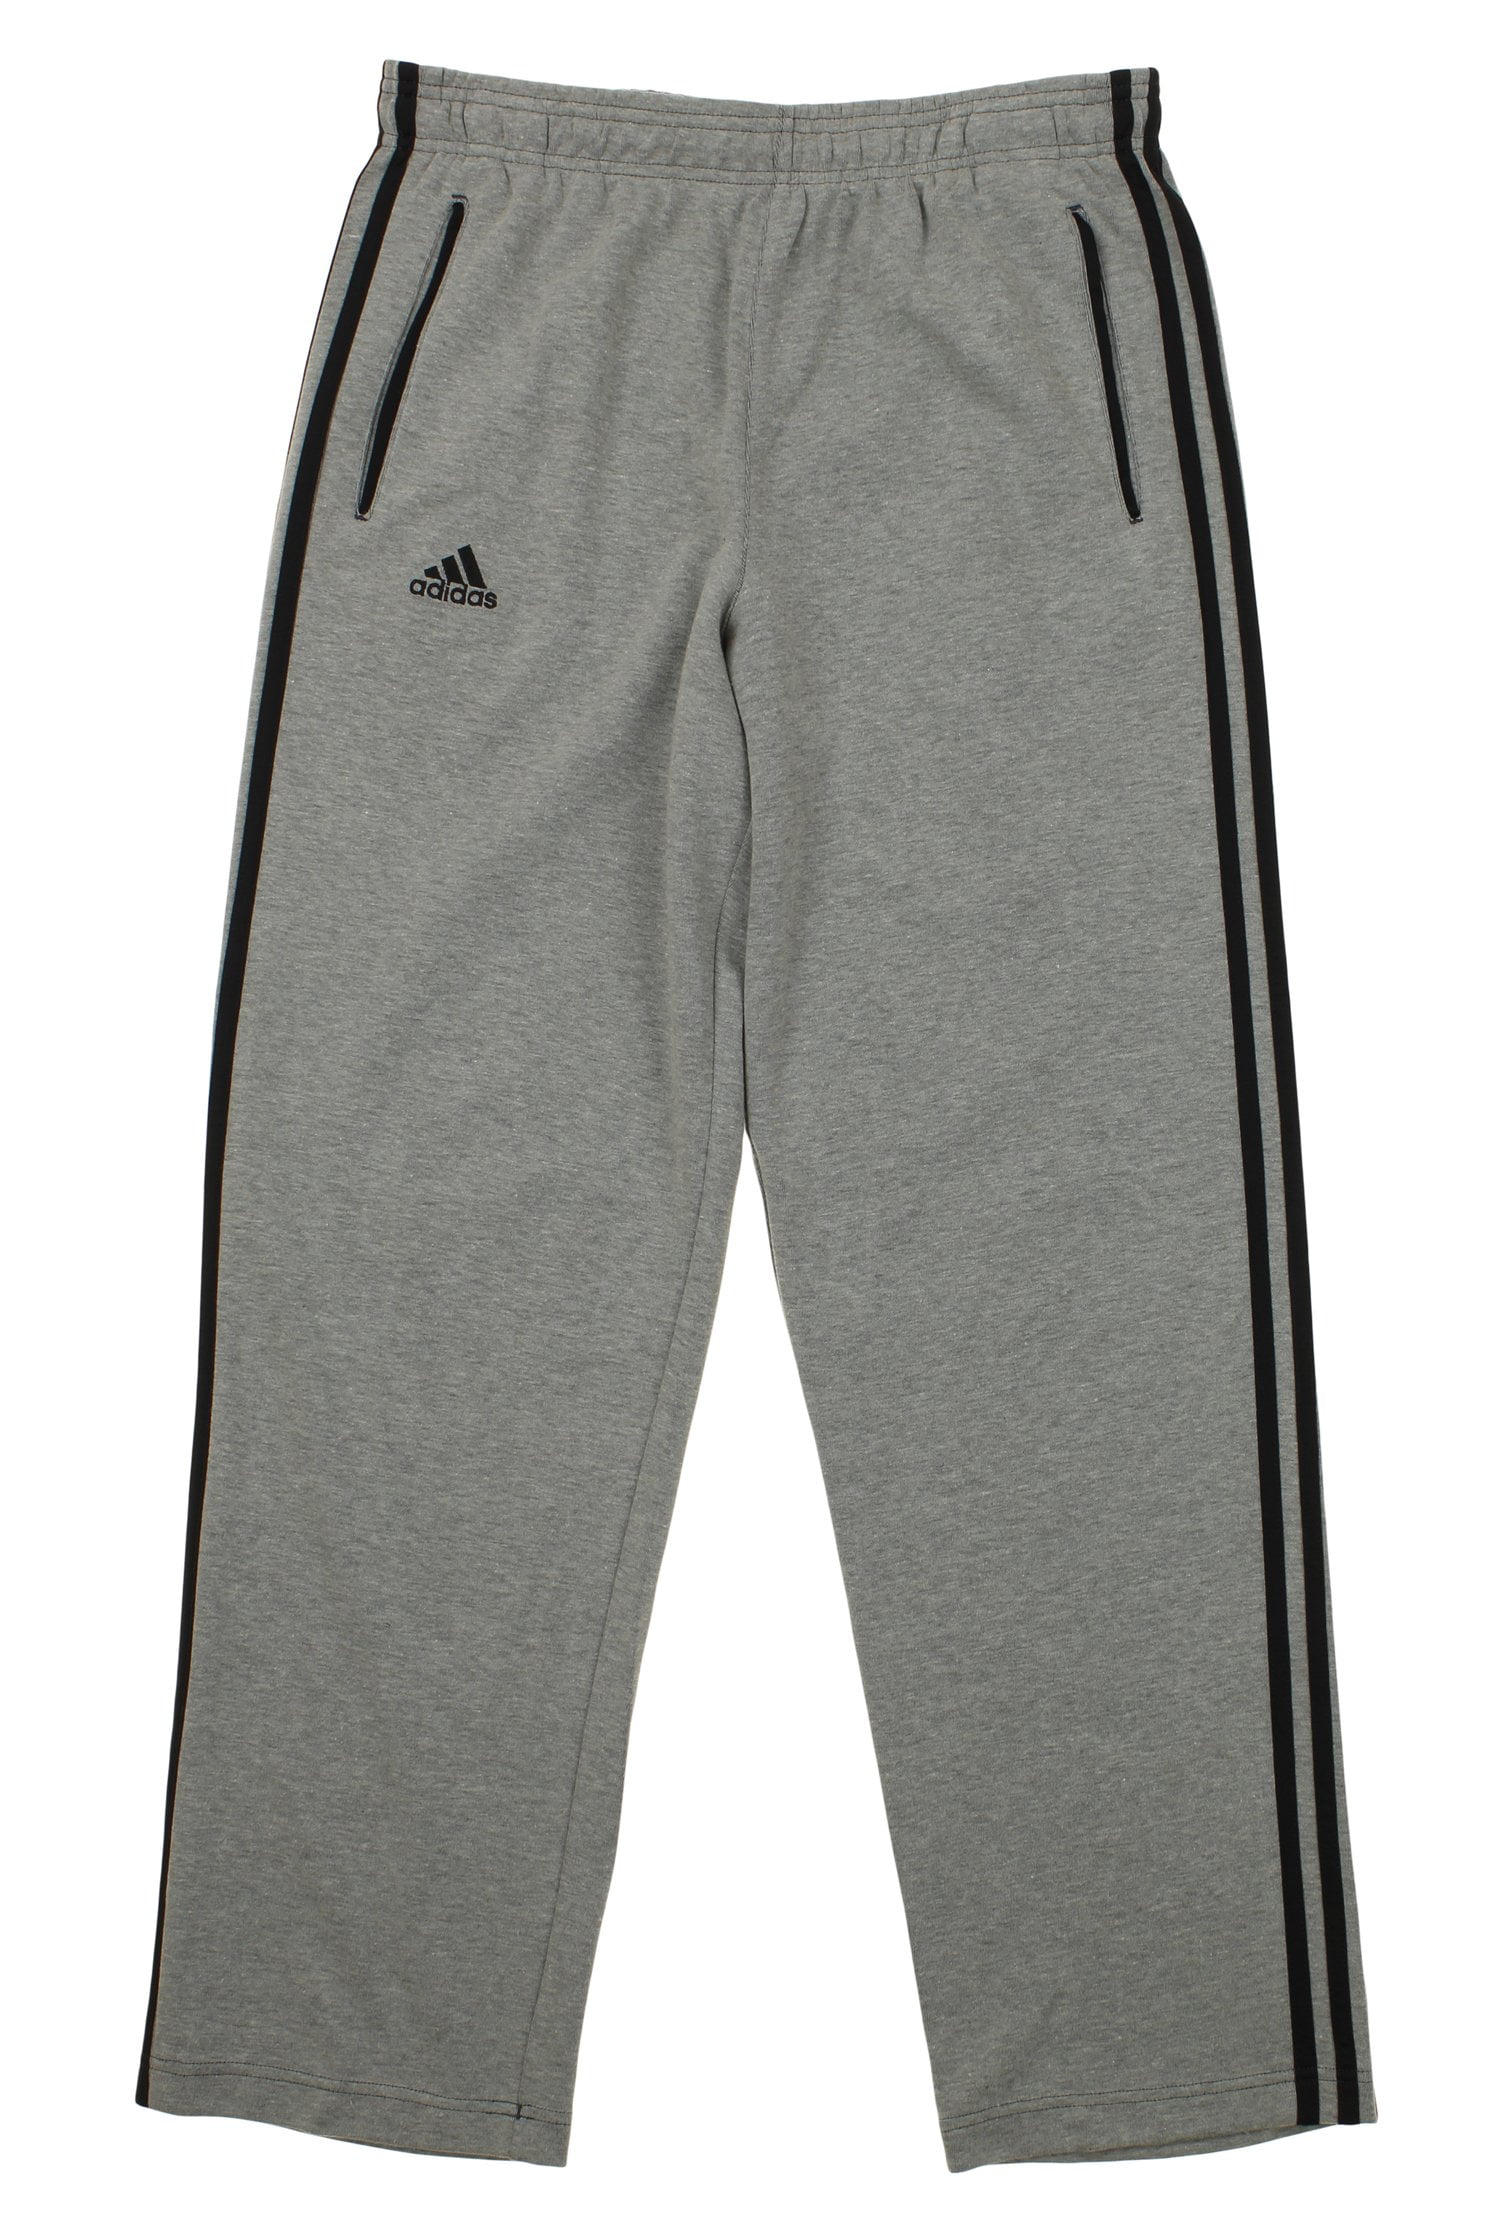 Adidas Men's Classic Grey - Walmart.com